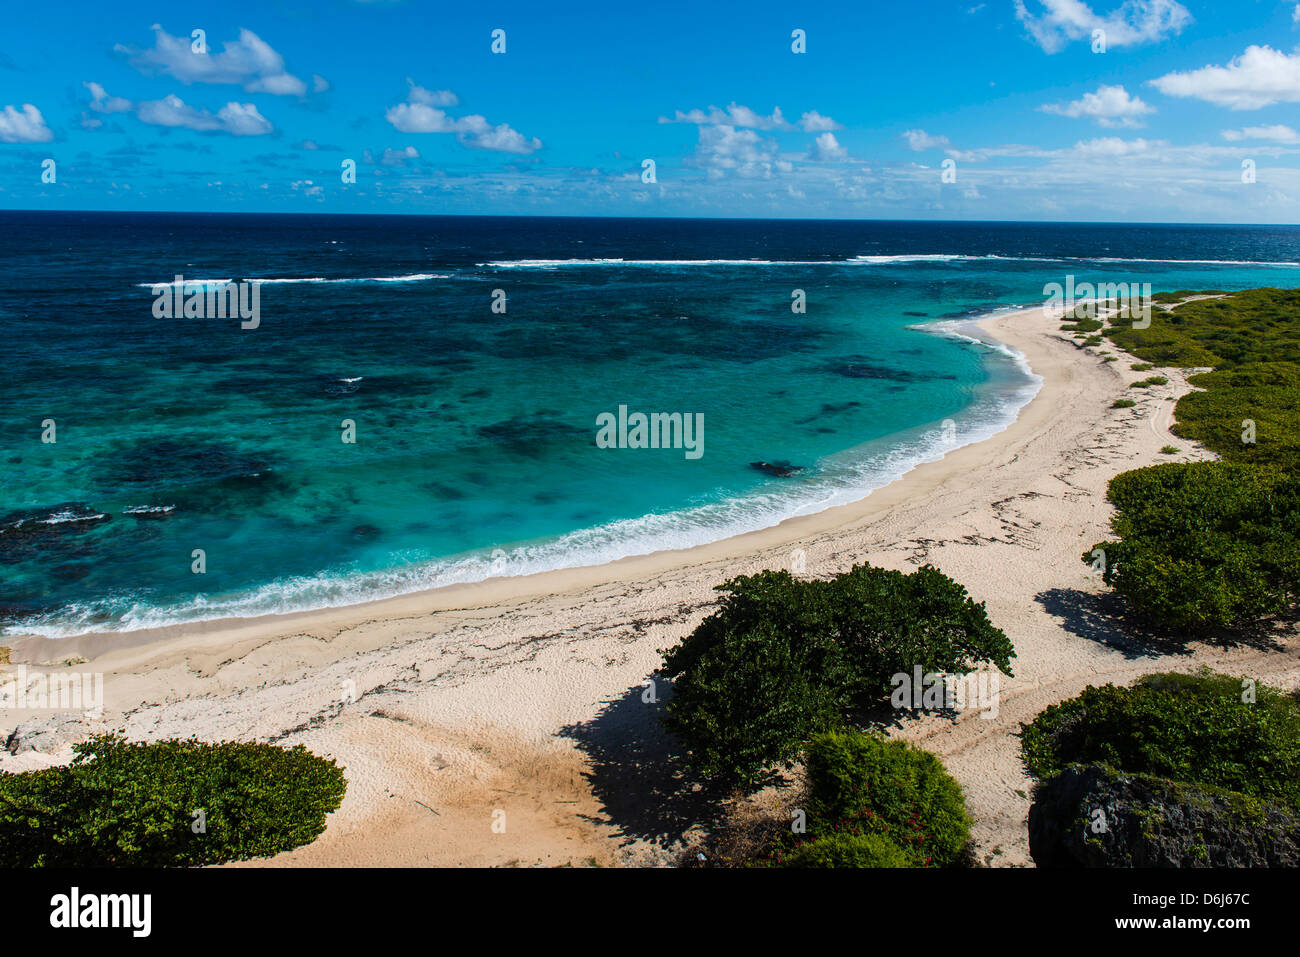 Vue sur les eaux turquoises de Barbuda, Antigua-et-Barbuda, Antilles, Caraïbes, Amérique Centrale Banque D'Images